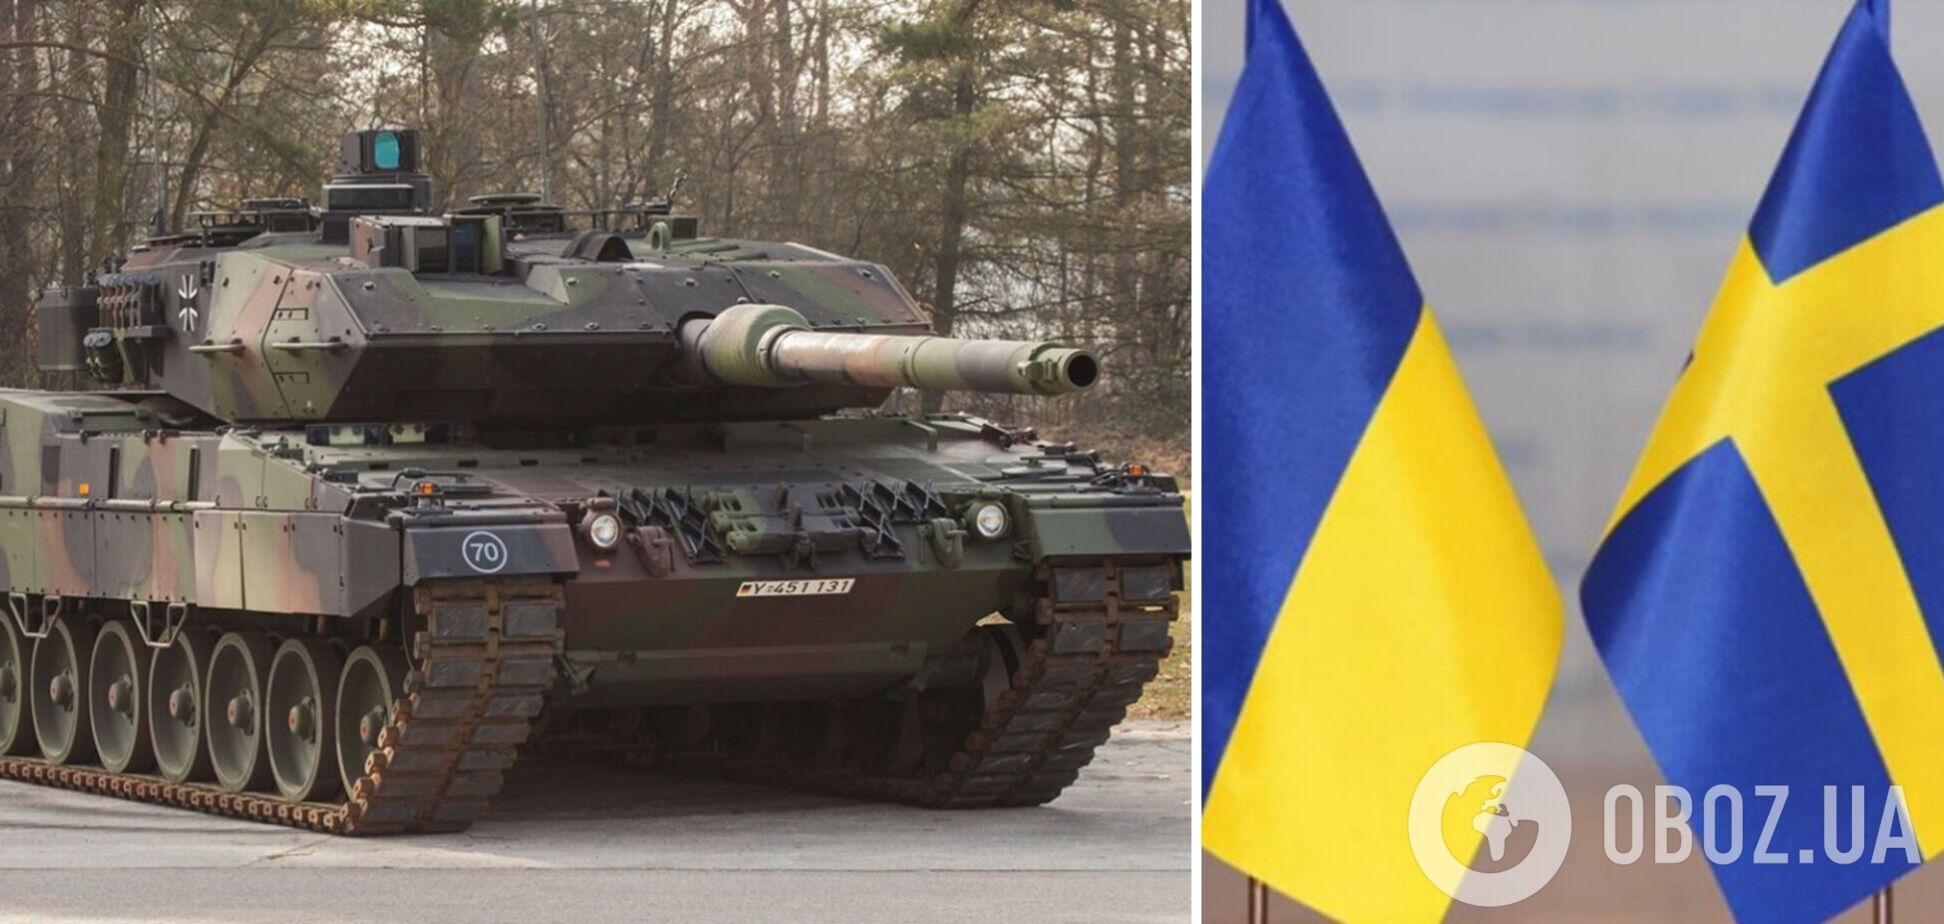 Посилити 'танковий кулак': Швеція планує надати Україні Leopard 2, названа кількість – Spiegel